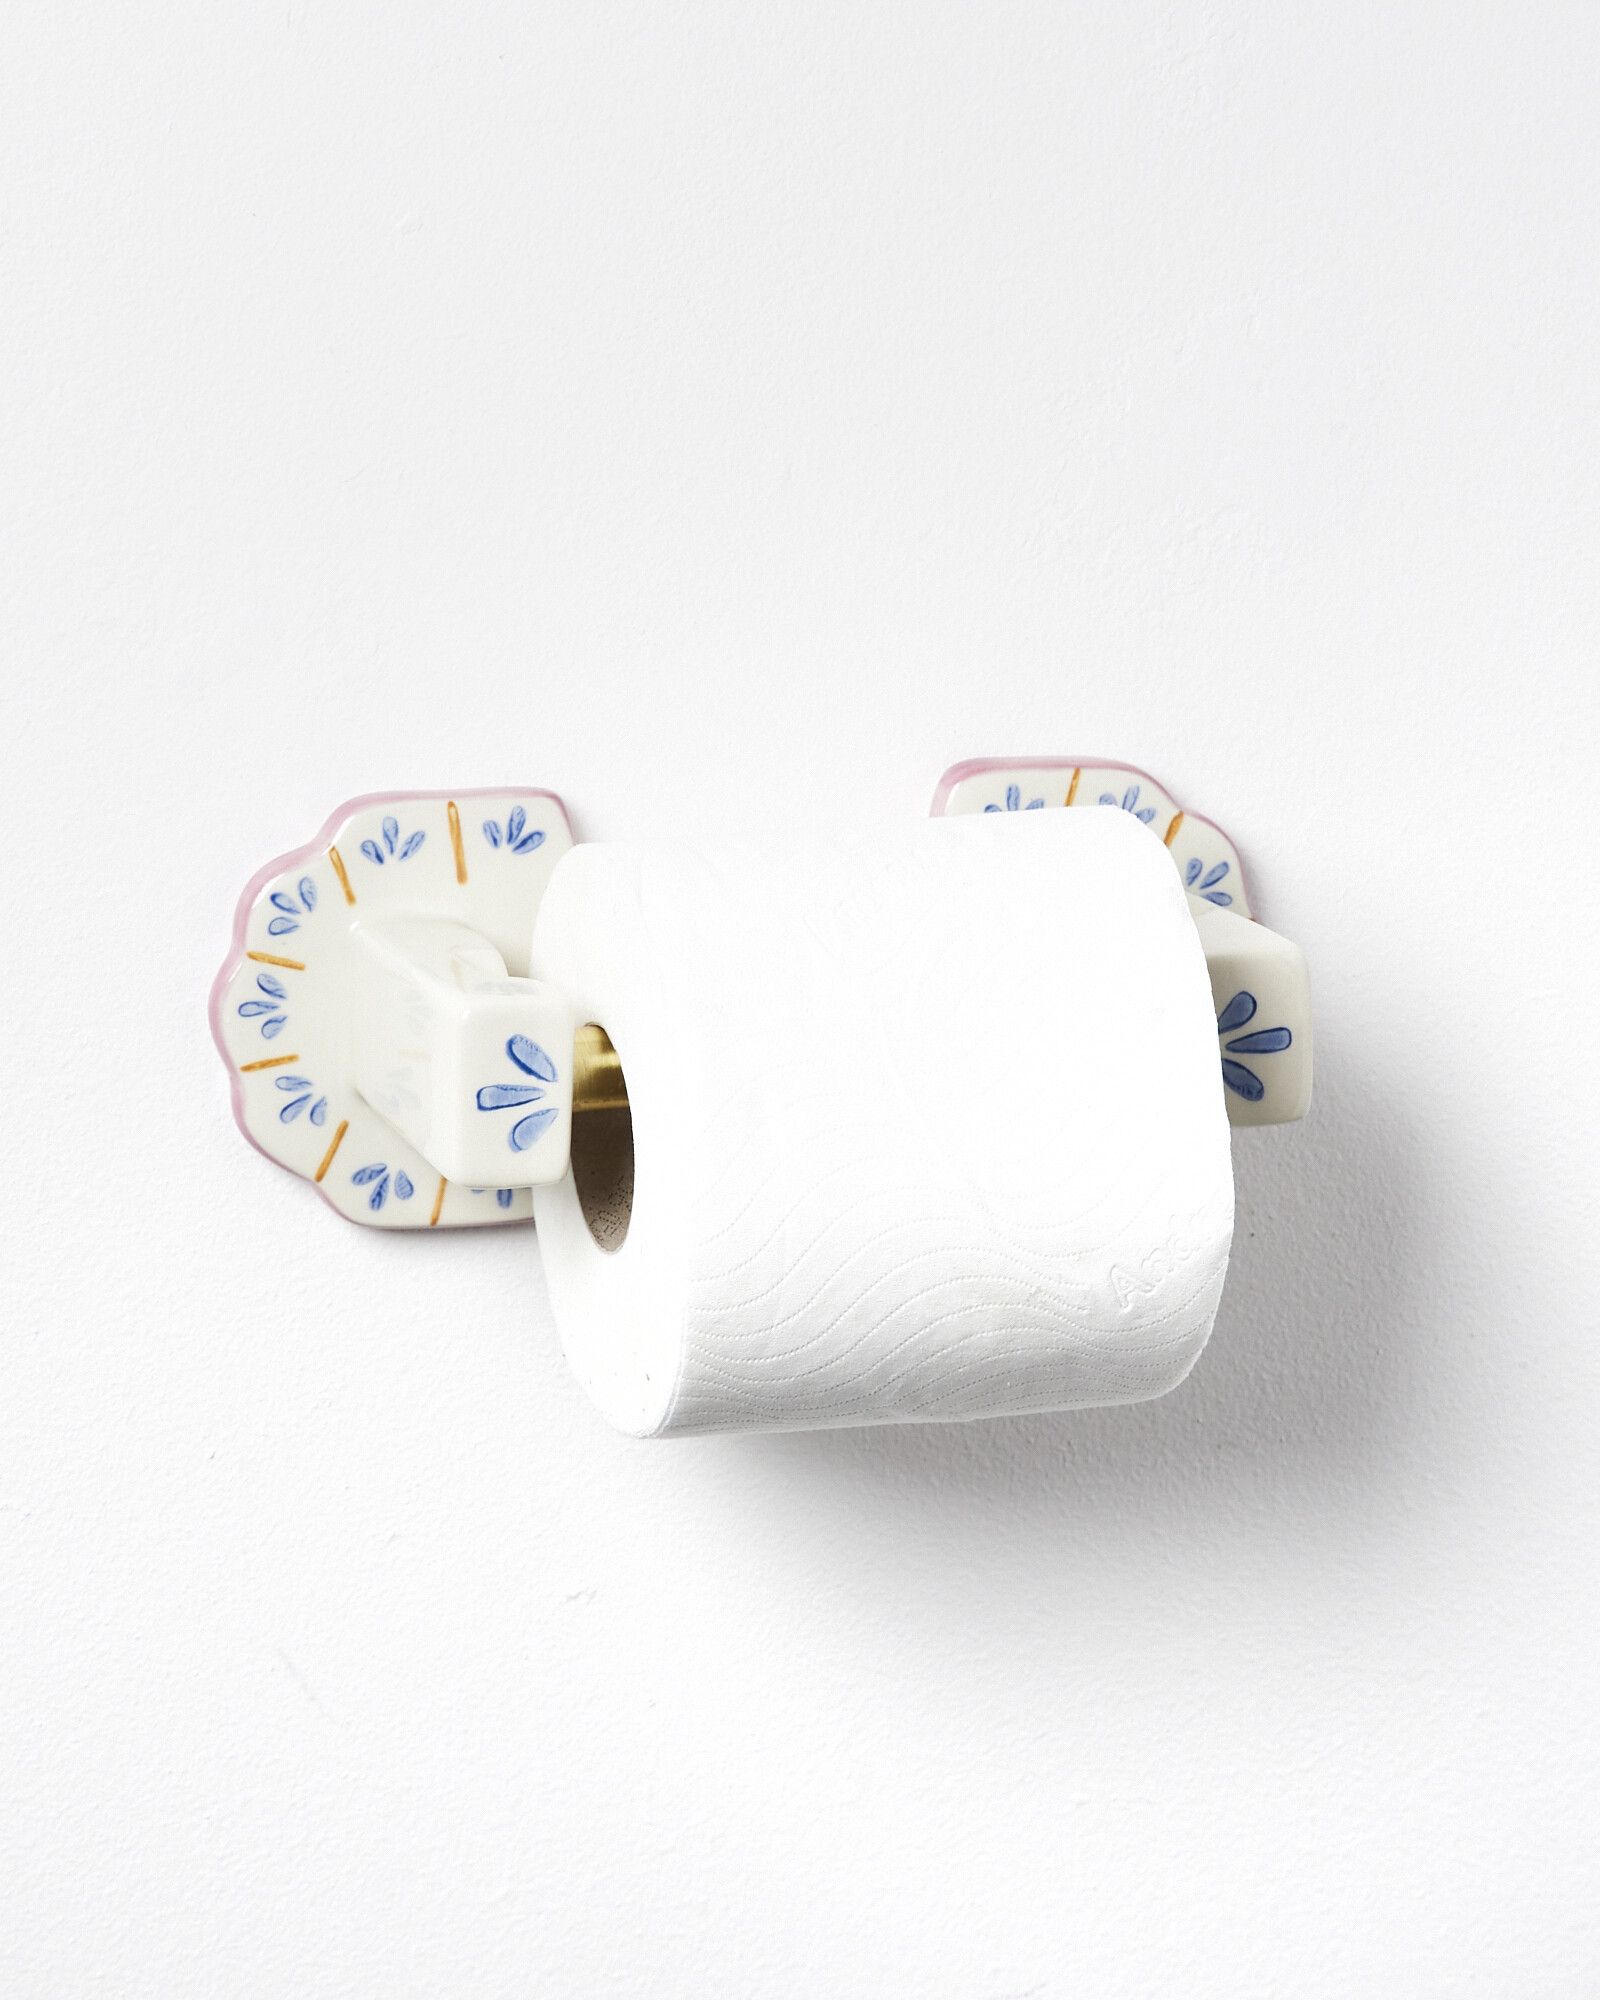 Paper roll holder porcelain